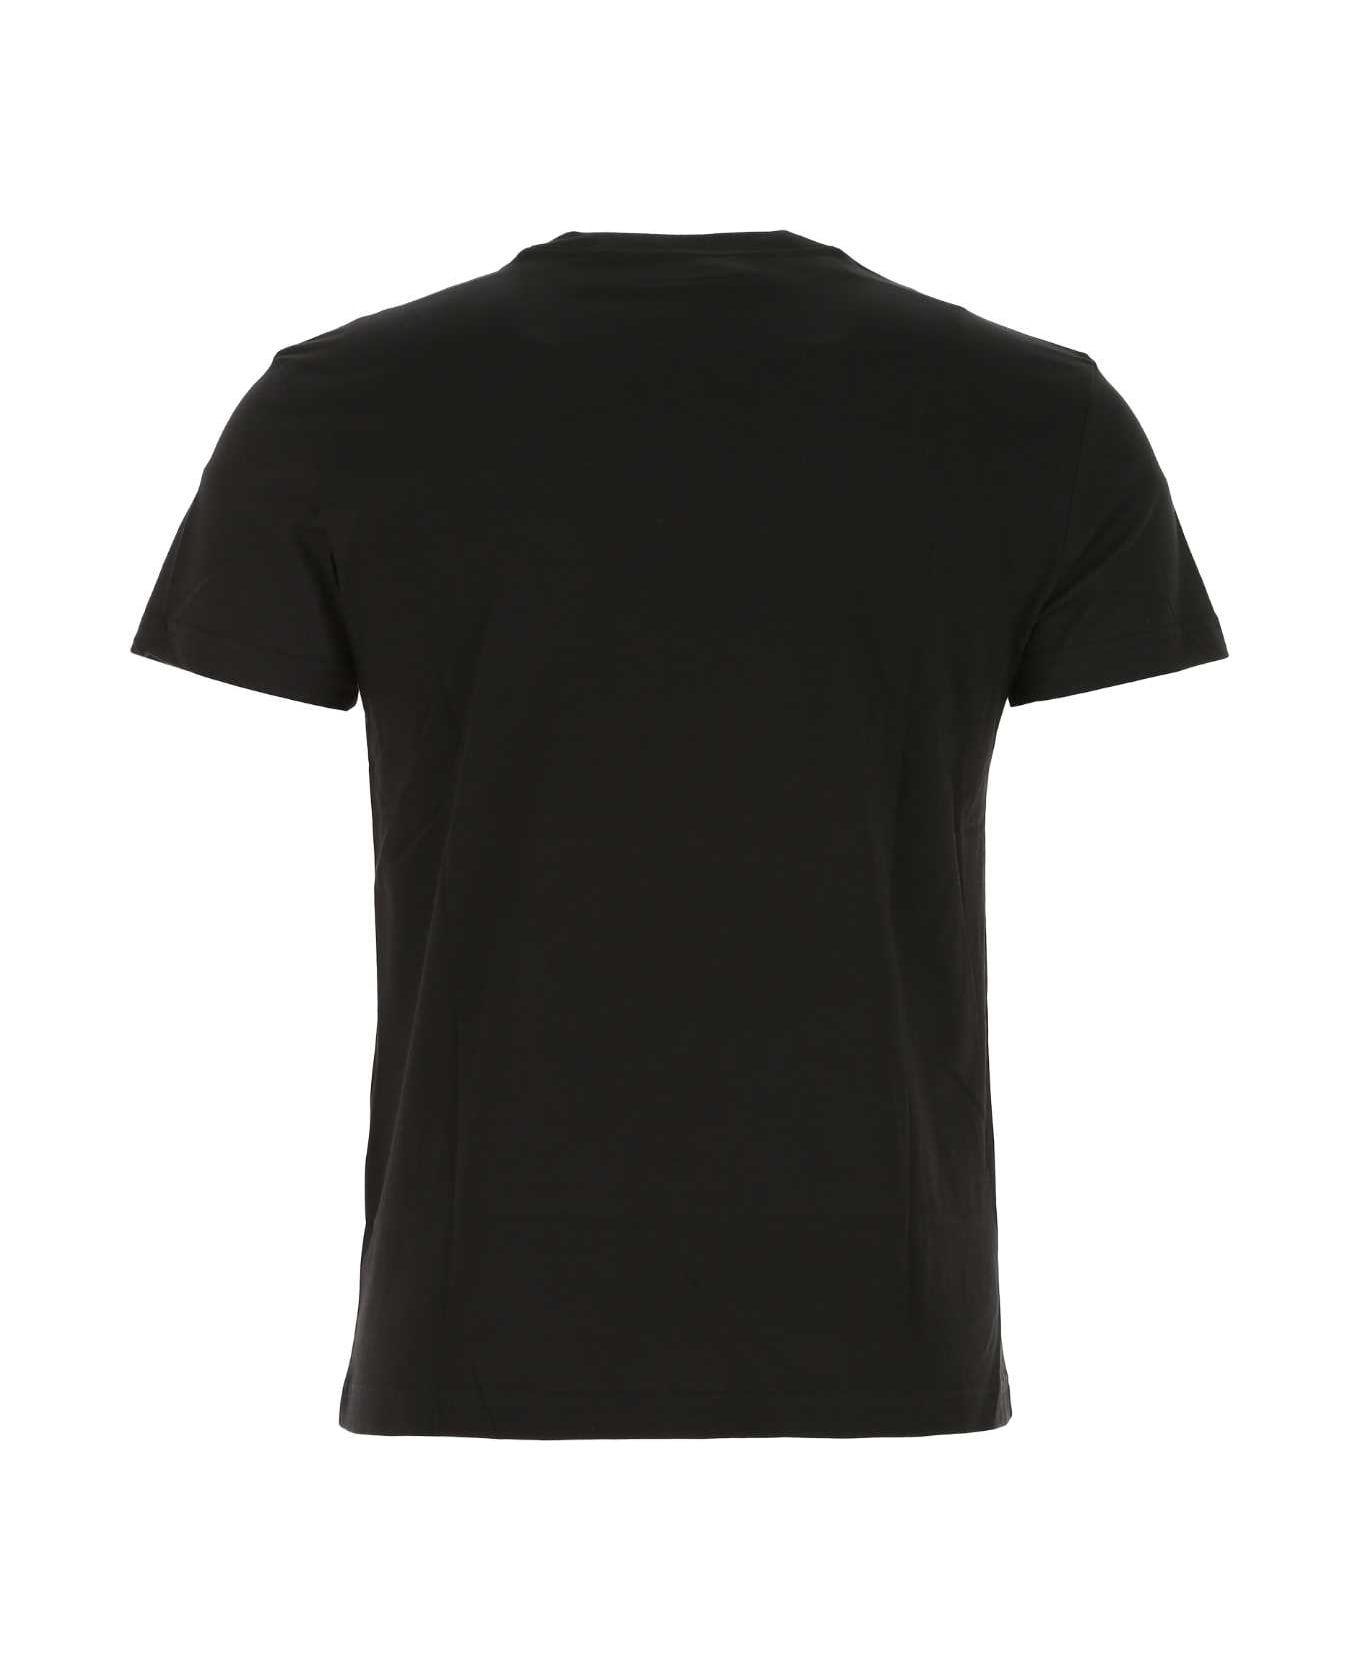 Versace Jeans Couture Black Cotton T-shirt - G89